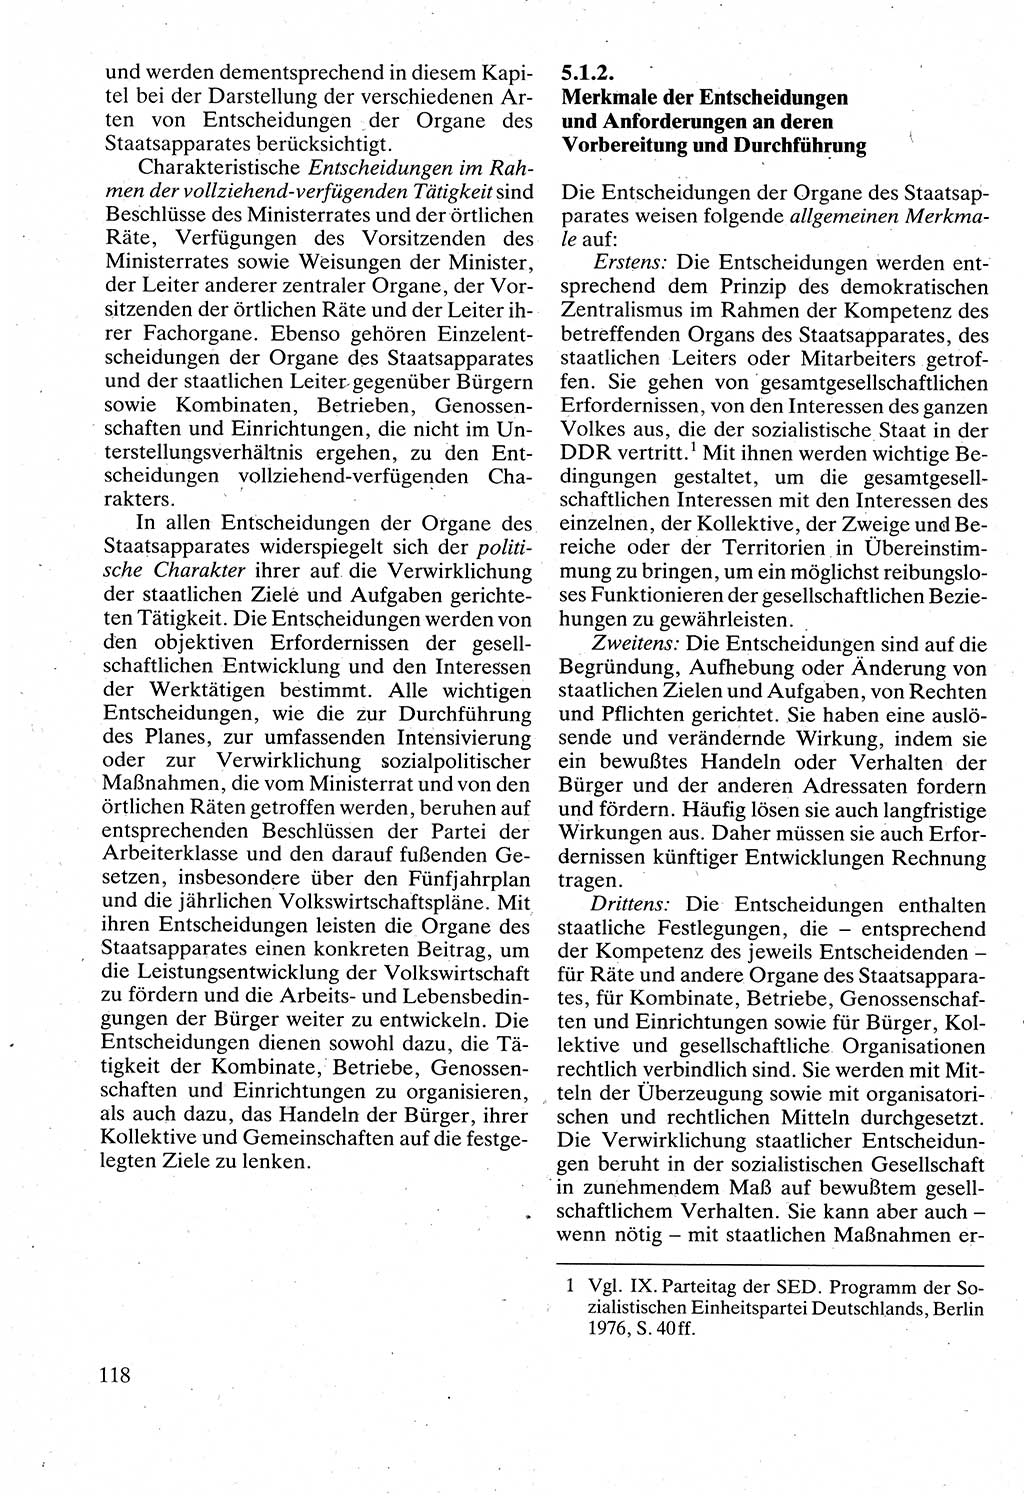 Verwaltungsrecht [Deutsche Demokratische Republik (DDR)], Lehrbuch 1988, Seite 118 (Verw.-R. DDR Lb. 1988, S. 118)